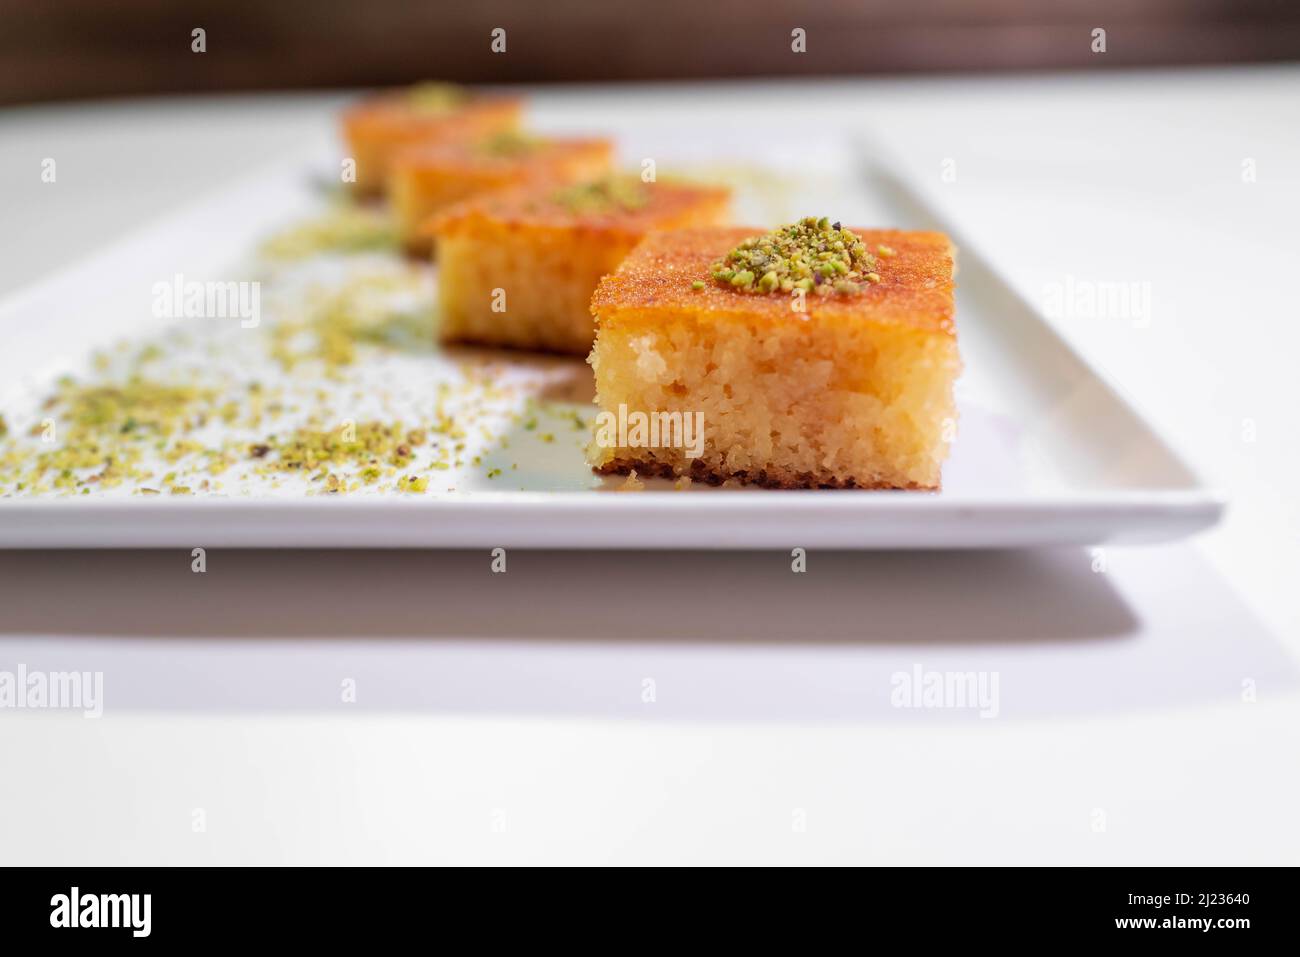 Traditionelles arabisches Dessert - ein Tablett mit einer Vielzahl von Süßigkeiten - kreative, leckere Kuchen aus dem Nahen Osten - arabische Küche Stockfoto